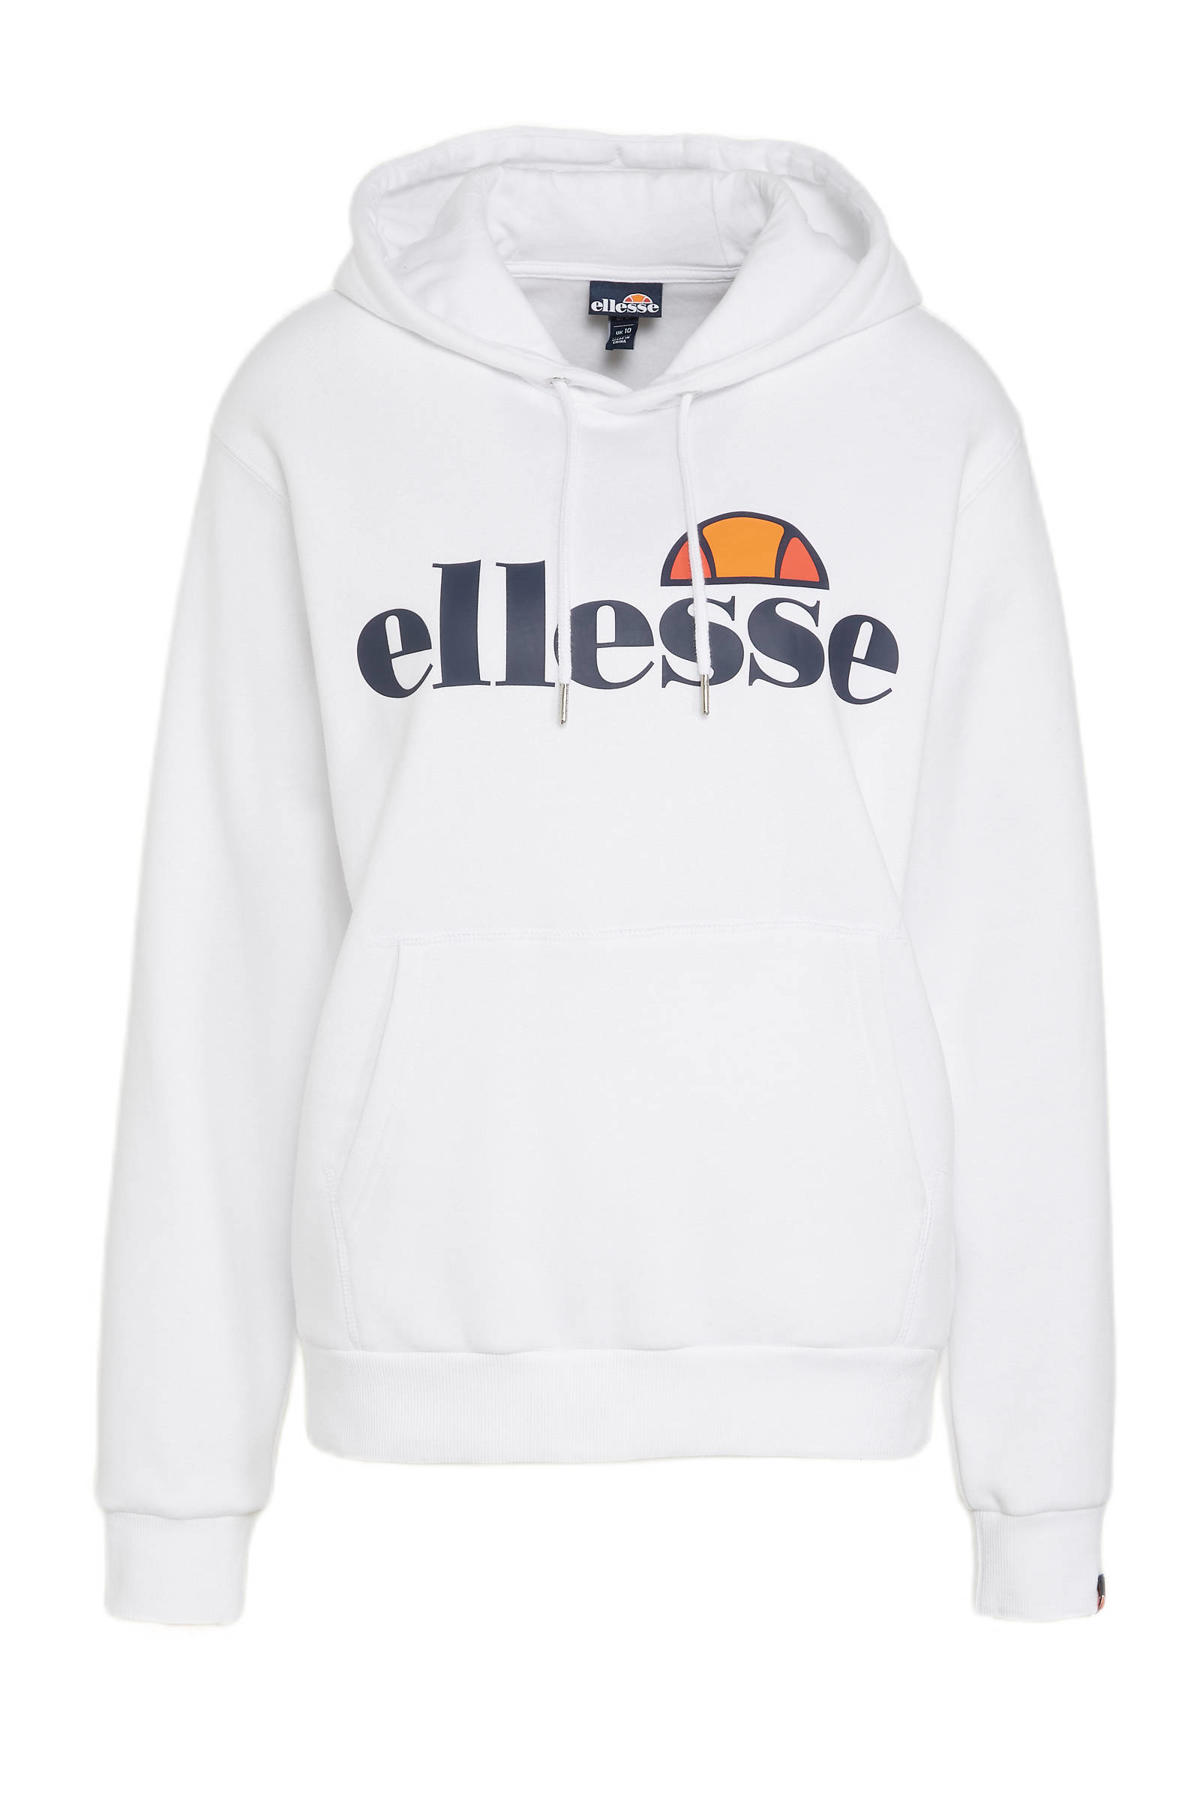 toevoegen Koopje is genoeg Ellesse hoodie met logo wit kopen? | Morgen in huis | wehkamp